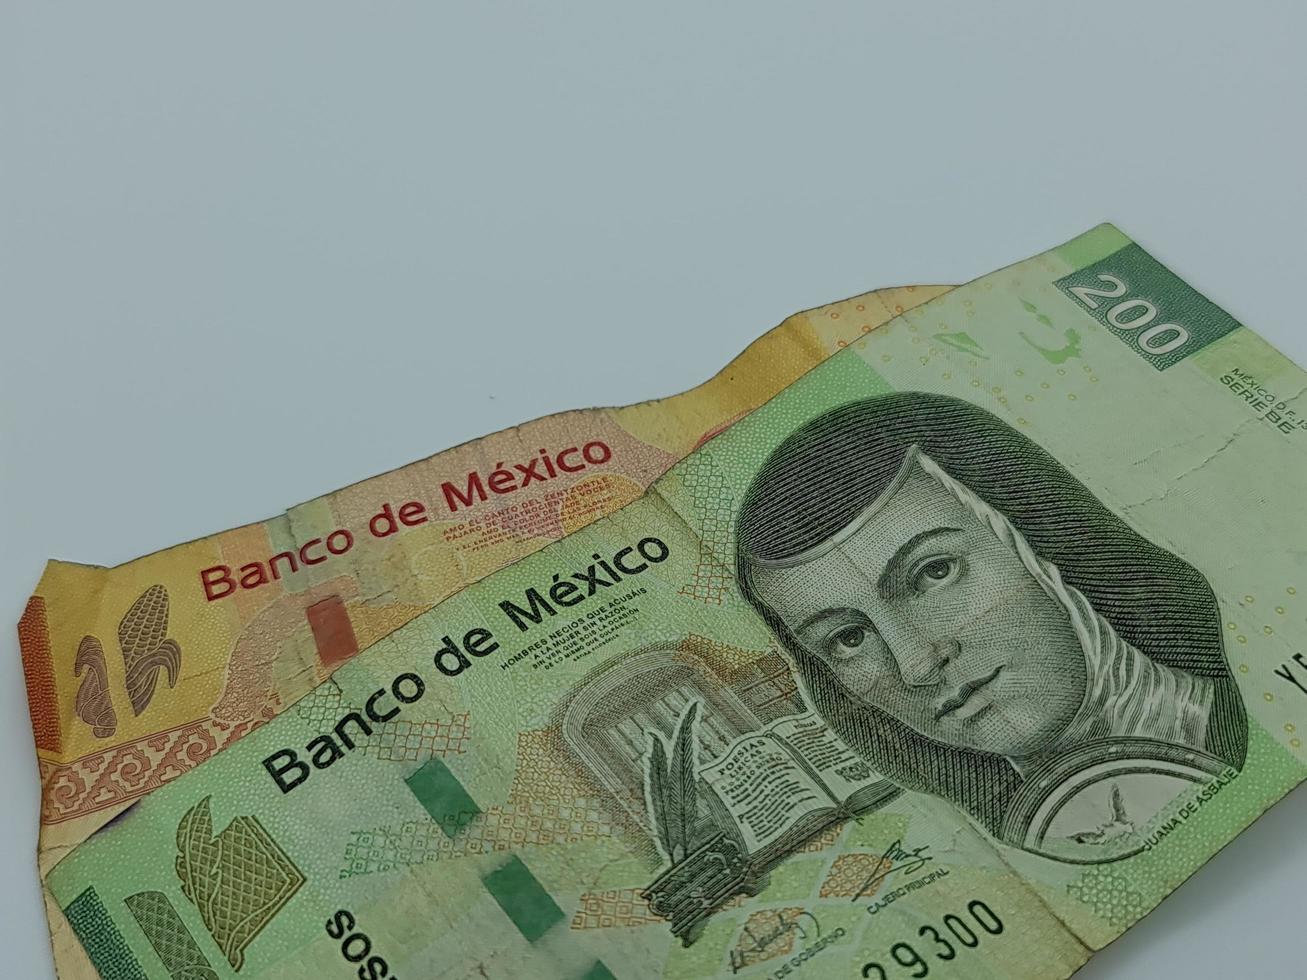 abordagem para notas de banco mexicanas empilhadas no fundo branco foto